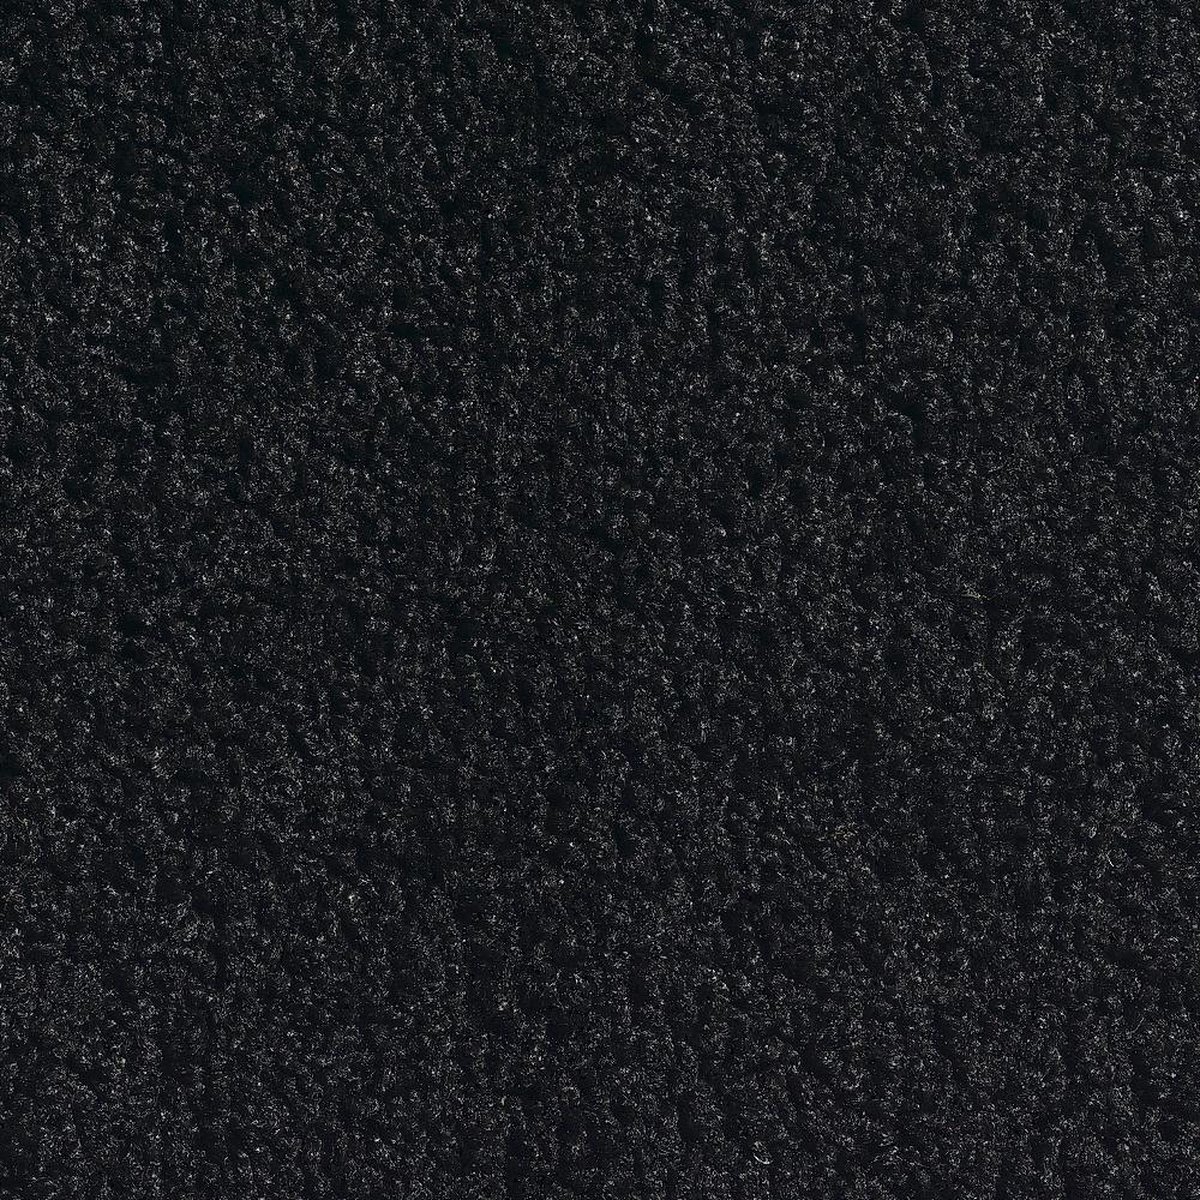 Hamat Twister Zwart|droogloopmat 125x200 zonder rand, Sterk absorberend anti slip